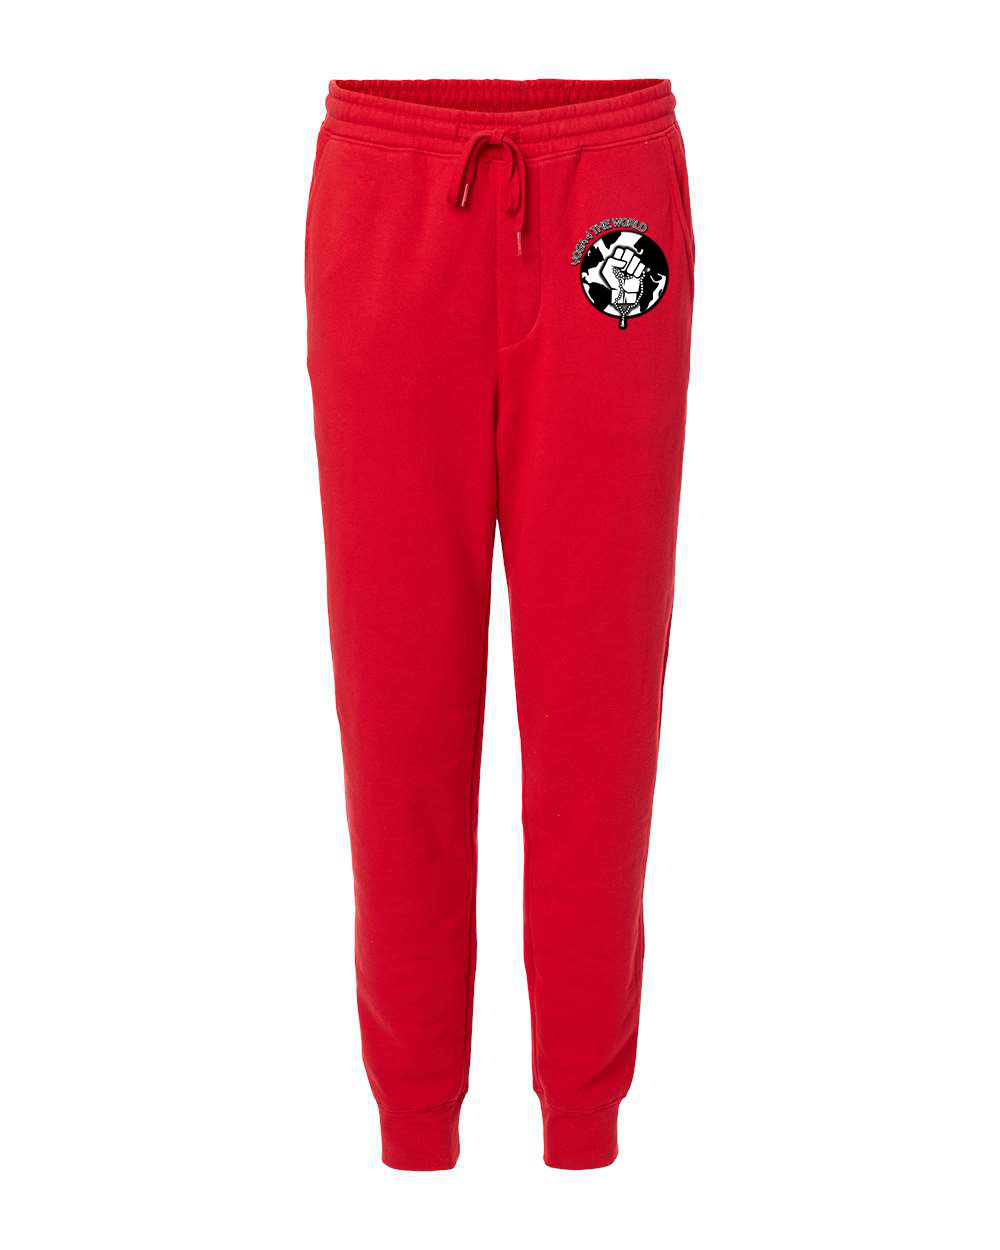 Yoga4TheWorld Red Fleece Pants